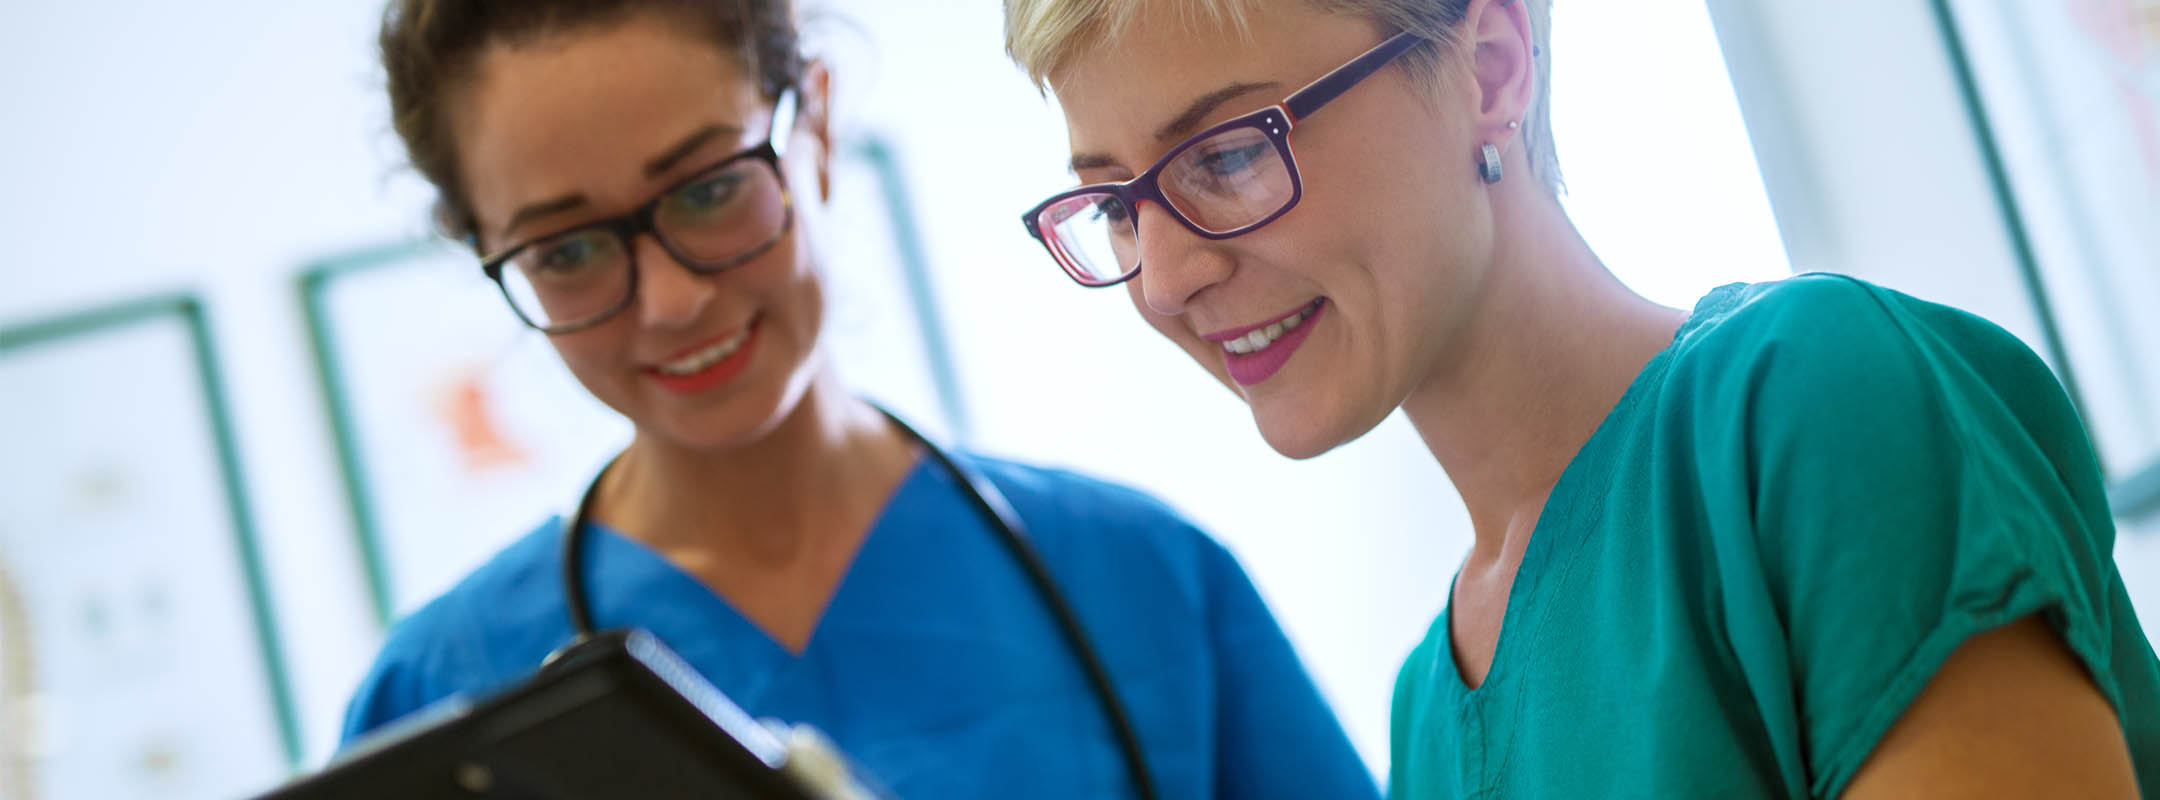 Zwei Krankenschwestern blicken gemeinsam auf Notizen